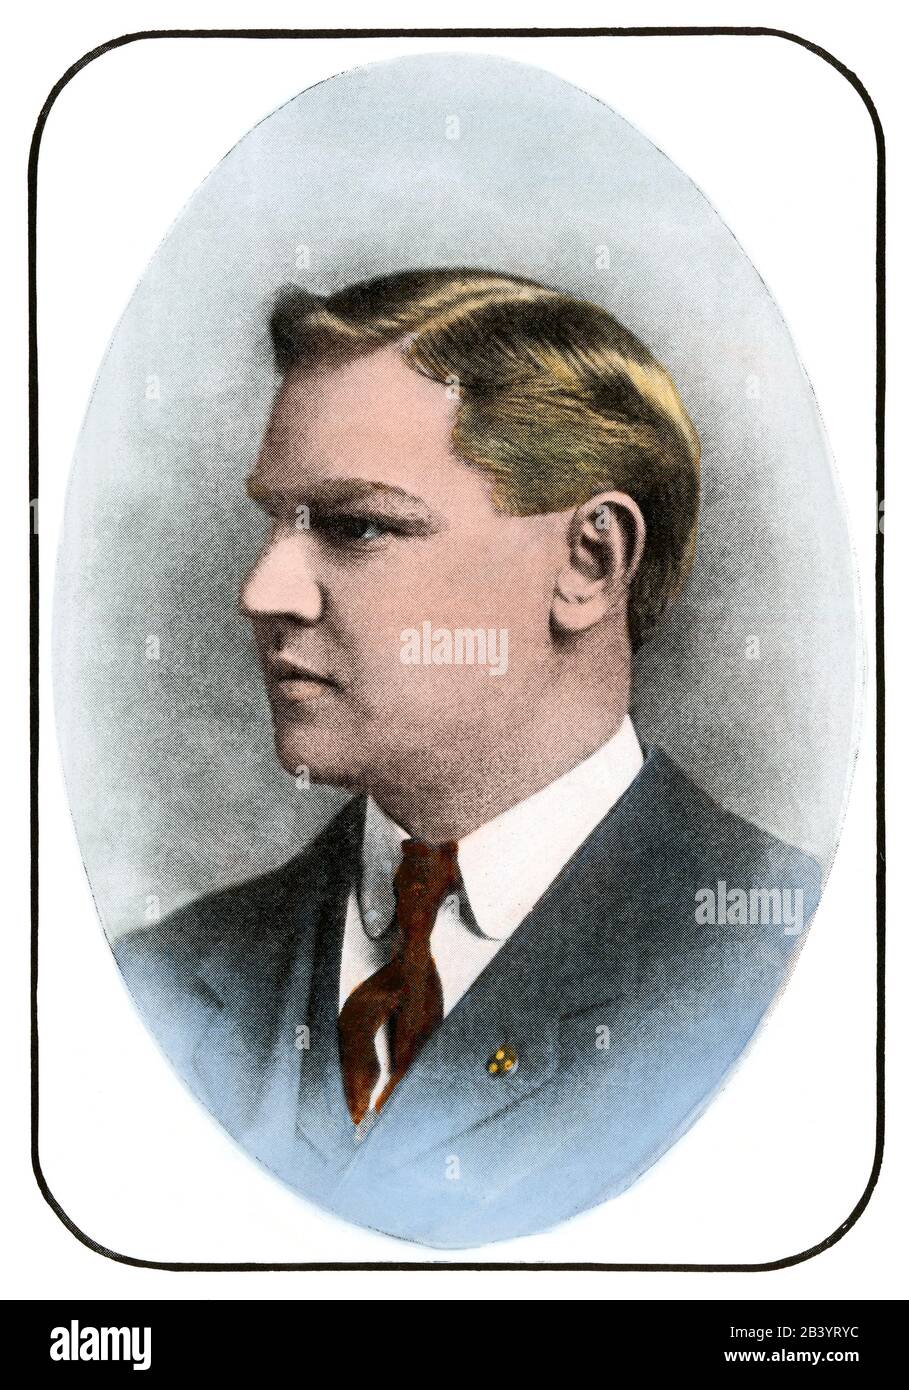 Big Bill Haywood, Segretario della Federazione Occidentale dei Mineri, 1906. Mezzitoni colorati a mano di una fotografia Foto Stock